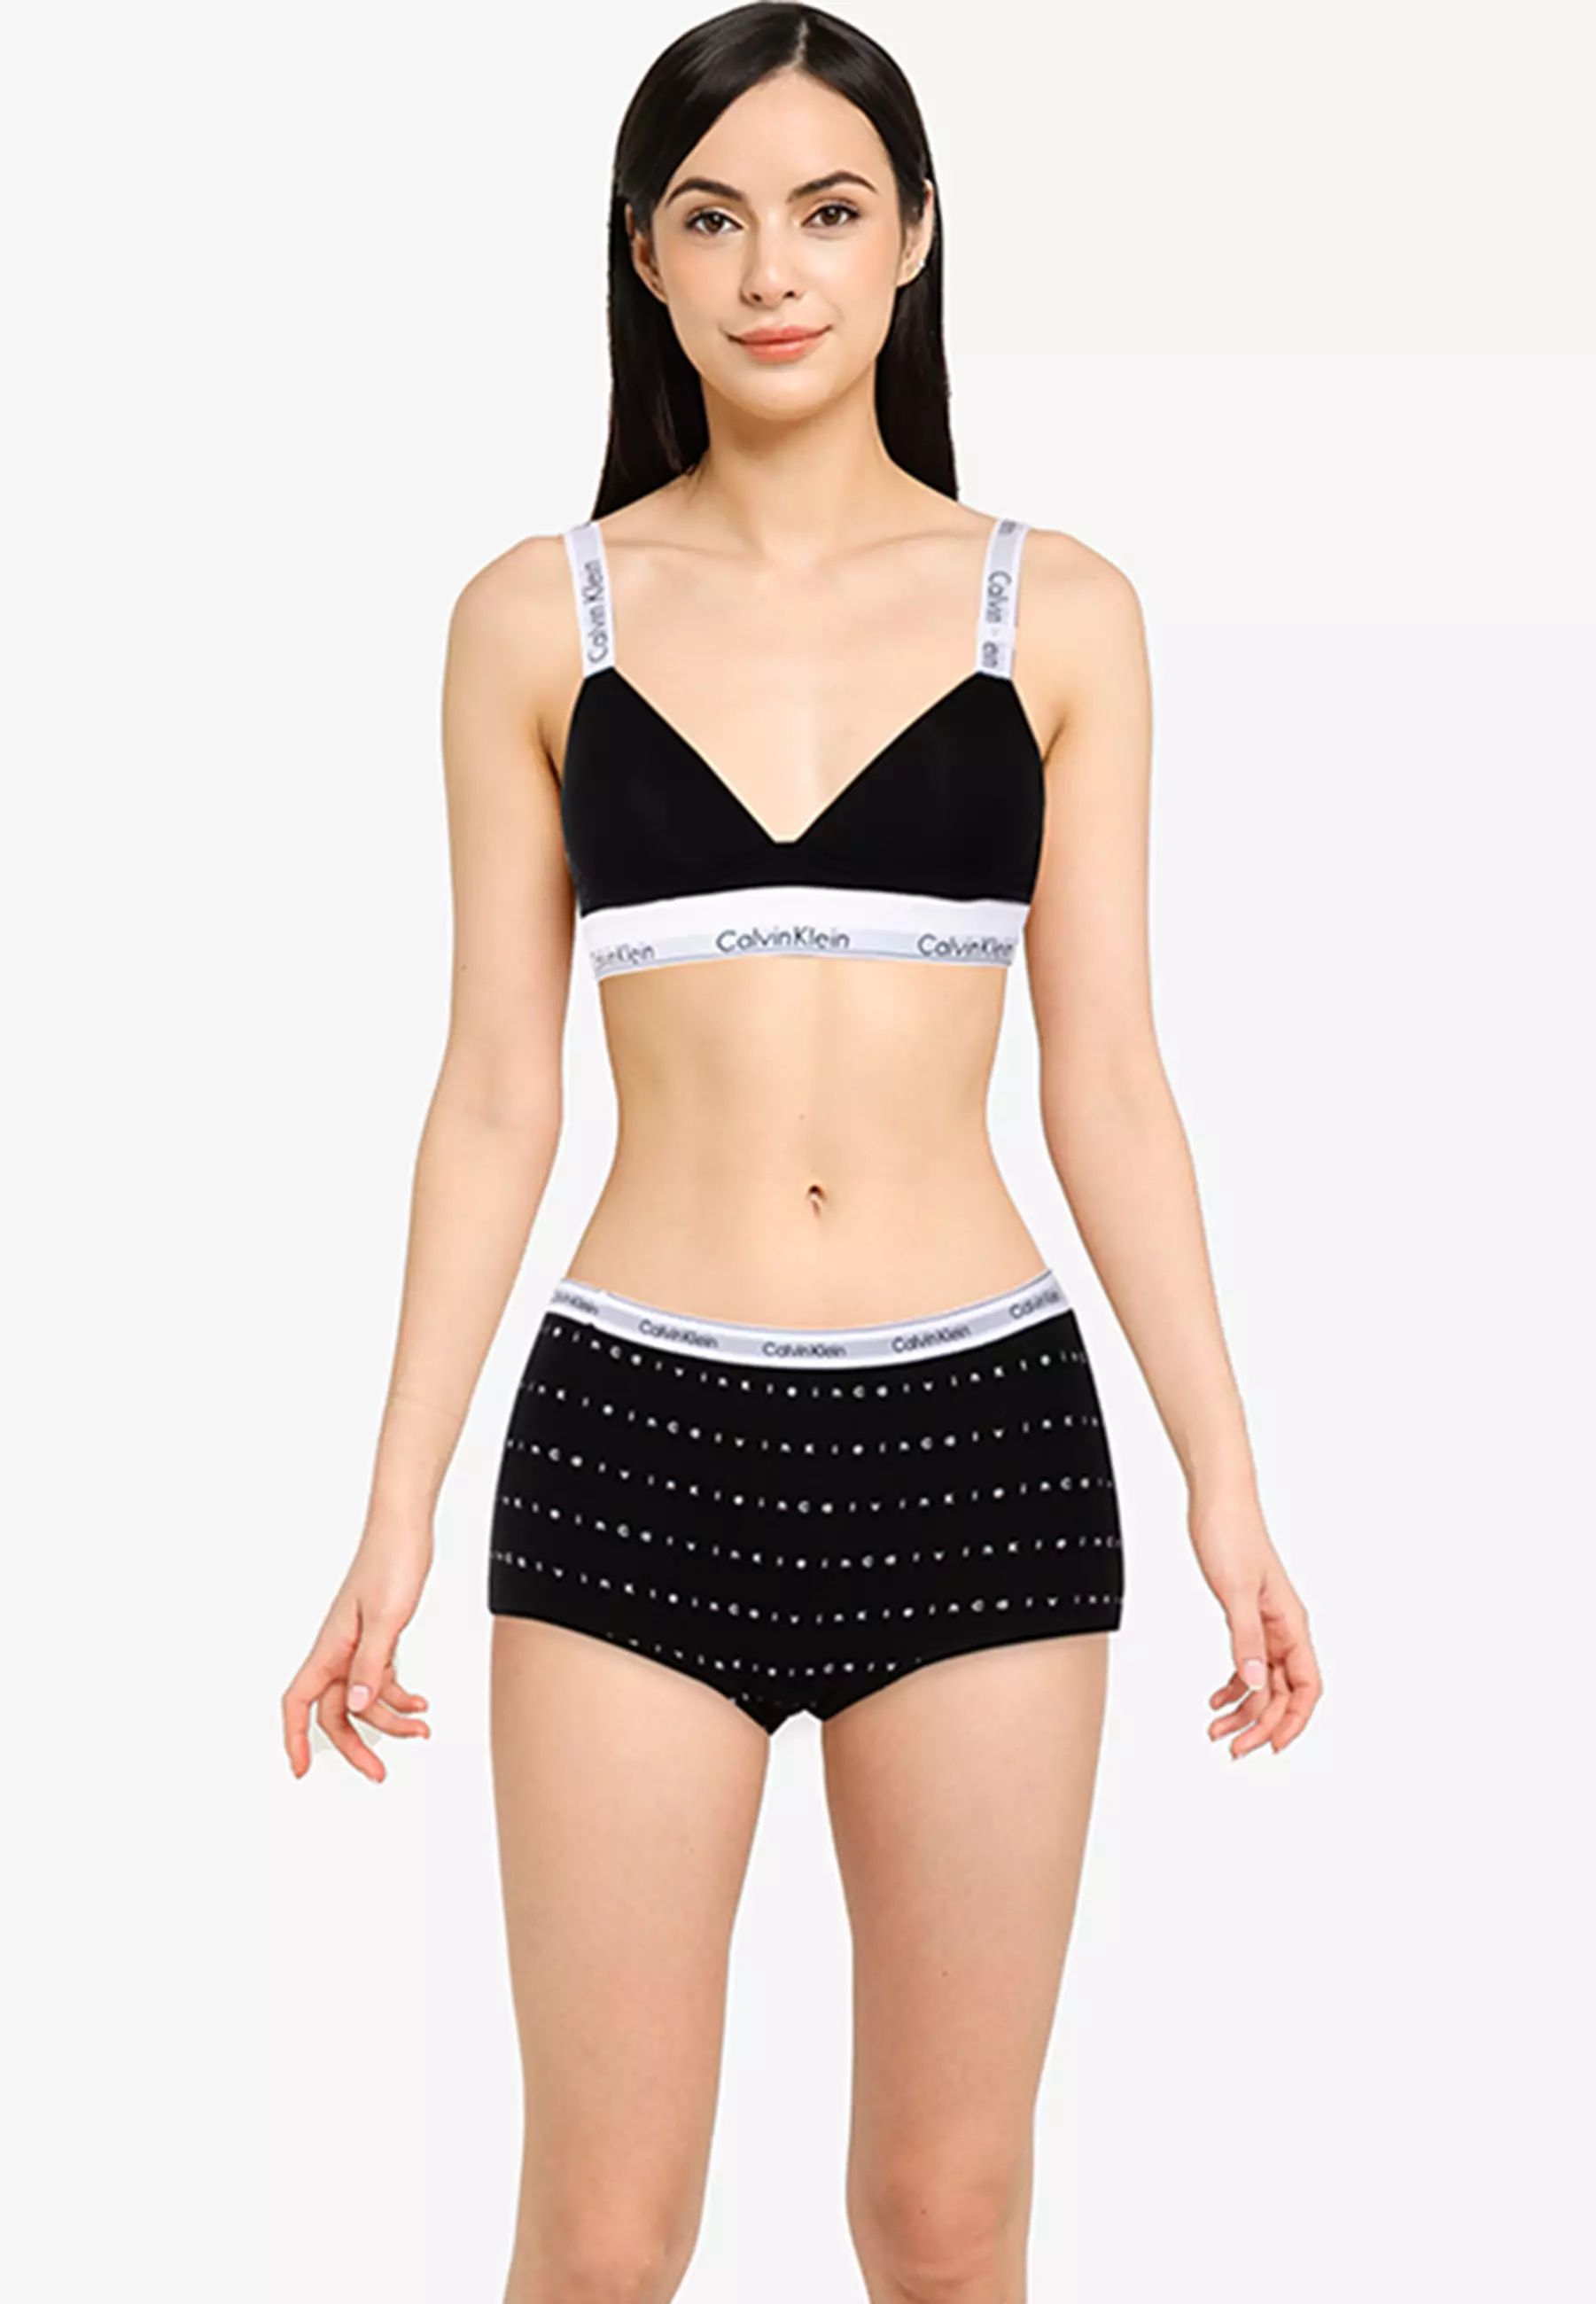 Buy Calvin Klein Lightly Lined Plunge Bra - Calvin Klein Underwear Online